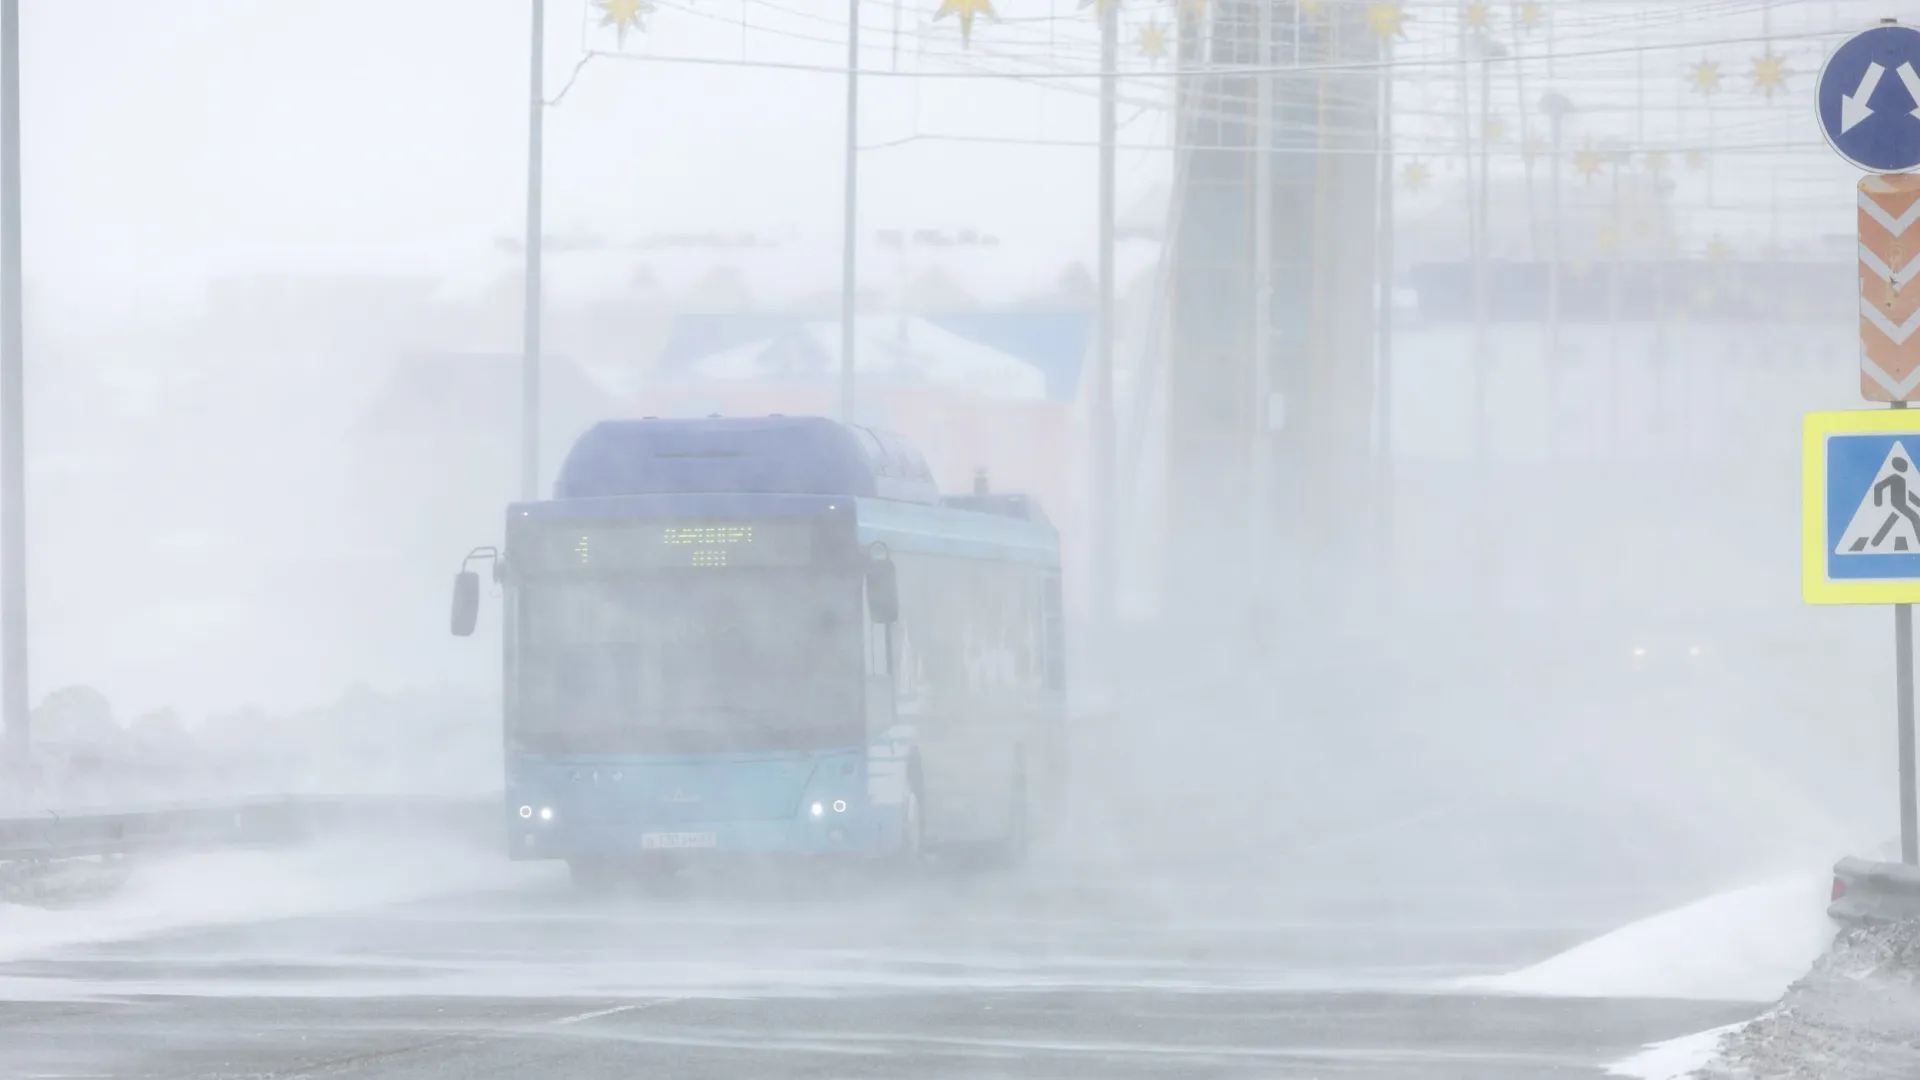 Из-за плохой видимости движение транспорта ограничено. Фото: Сергей Зубков / «Ямал-Медиа»